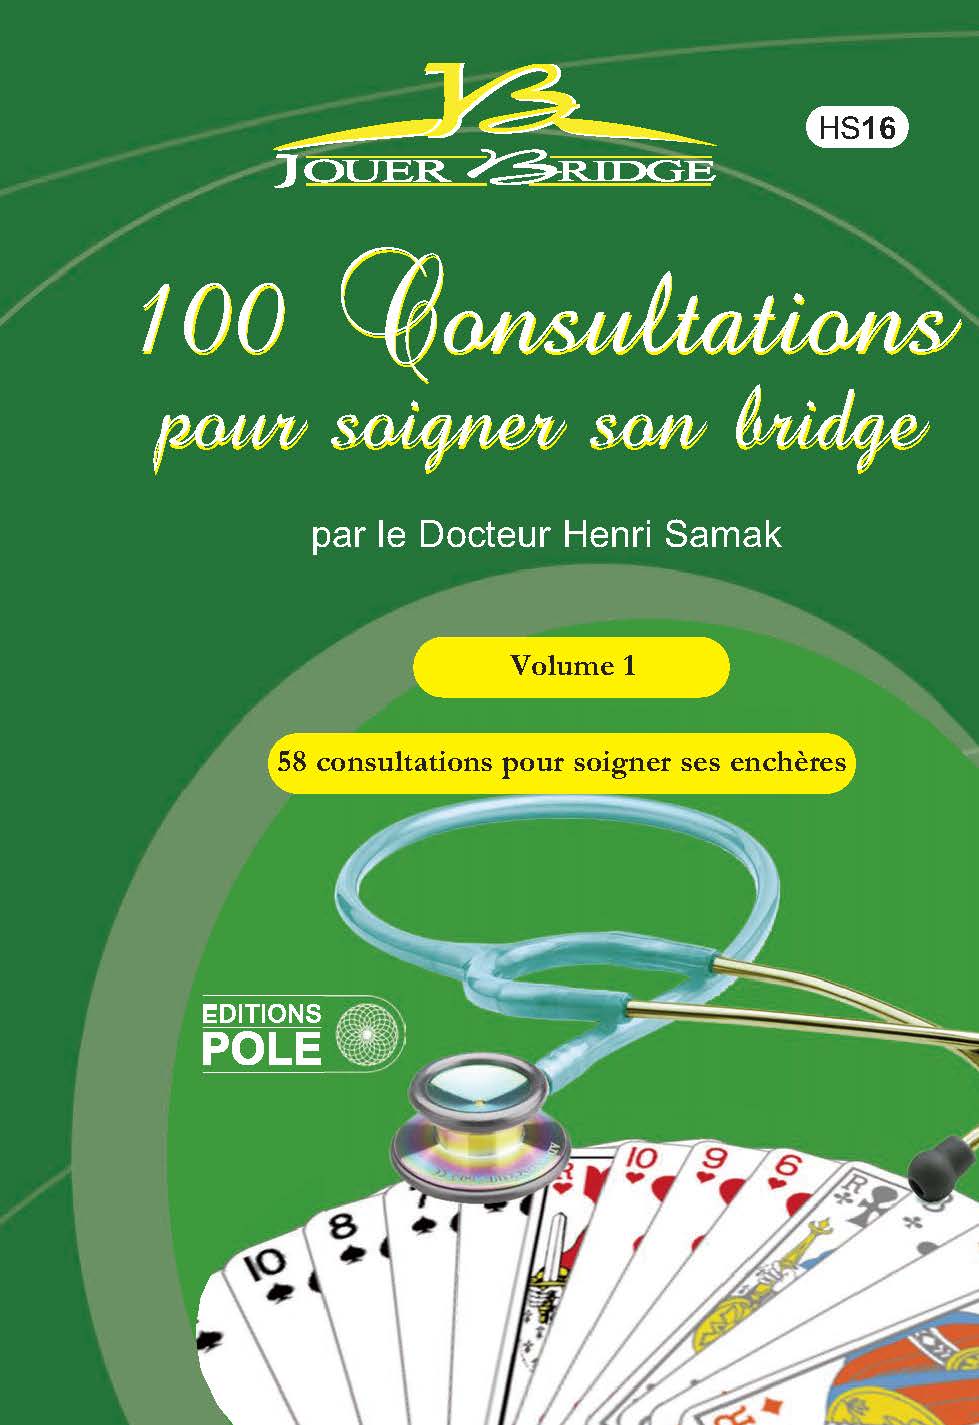 image HS 16 - 100 consultations pour soigner son bridge T1